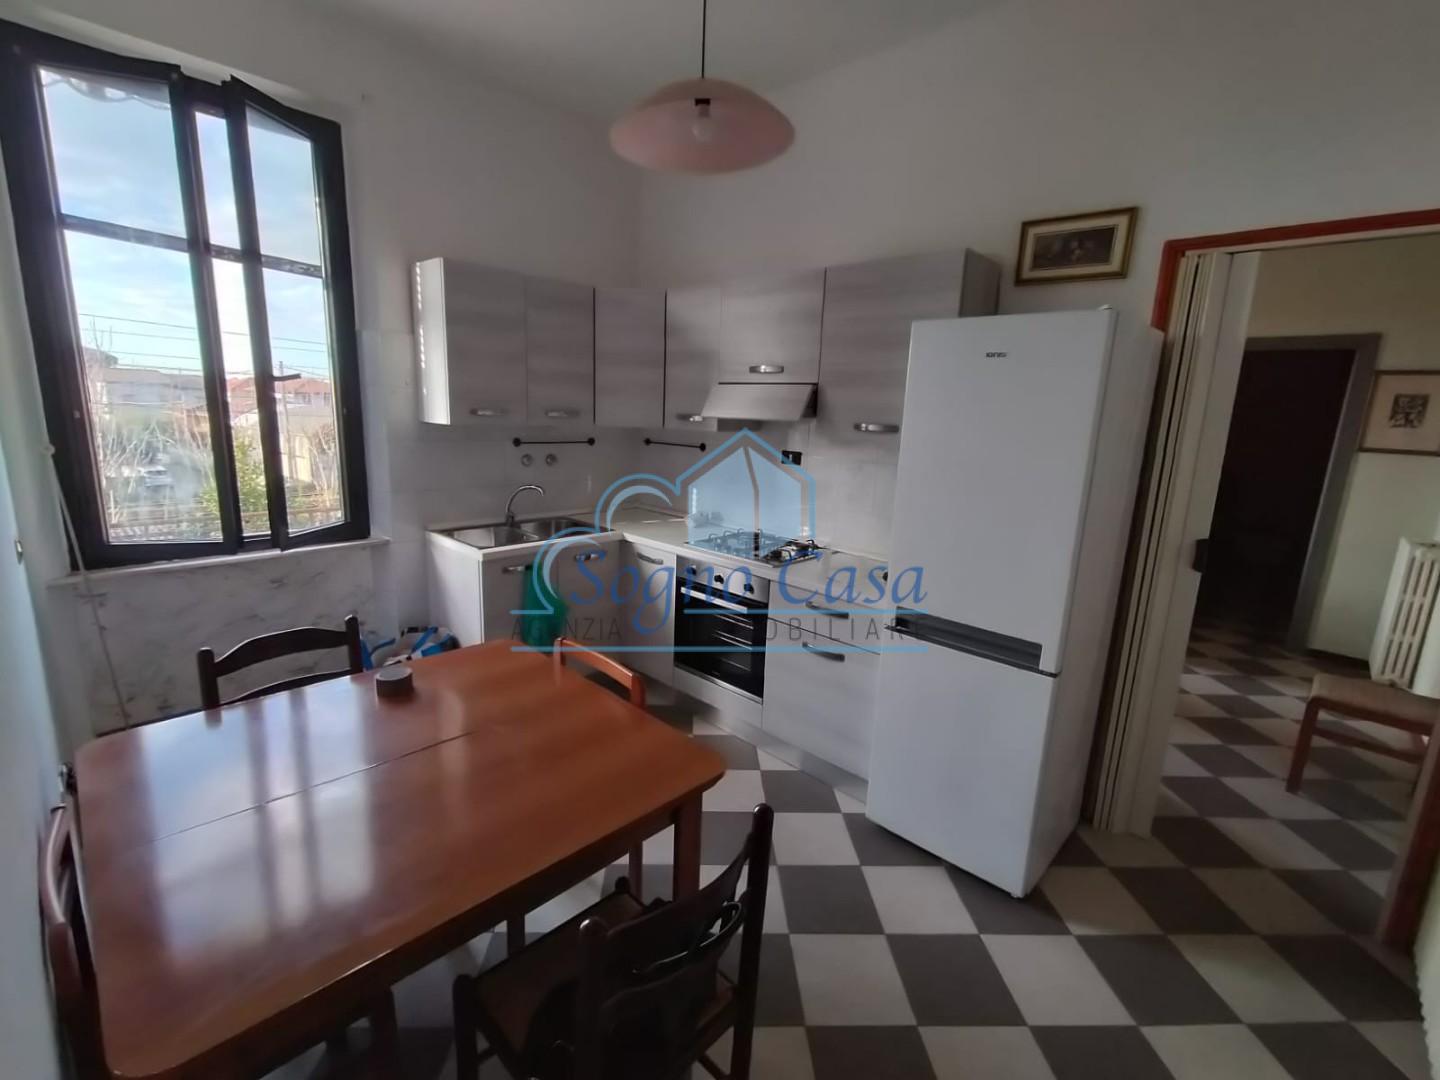 Appartamento in vendita a Ortonovo, 3 locali, prezzo € 120.000 | PortaleAgenzieImmobiliari.it